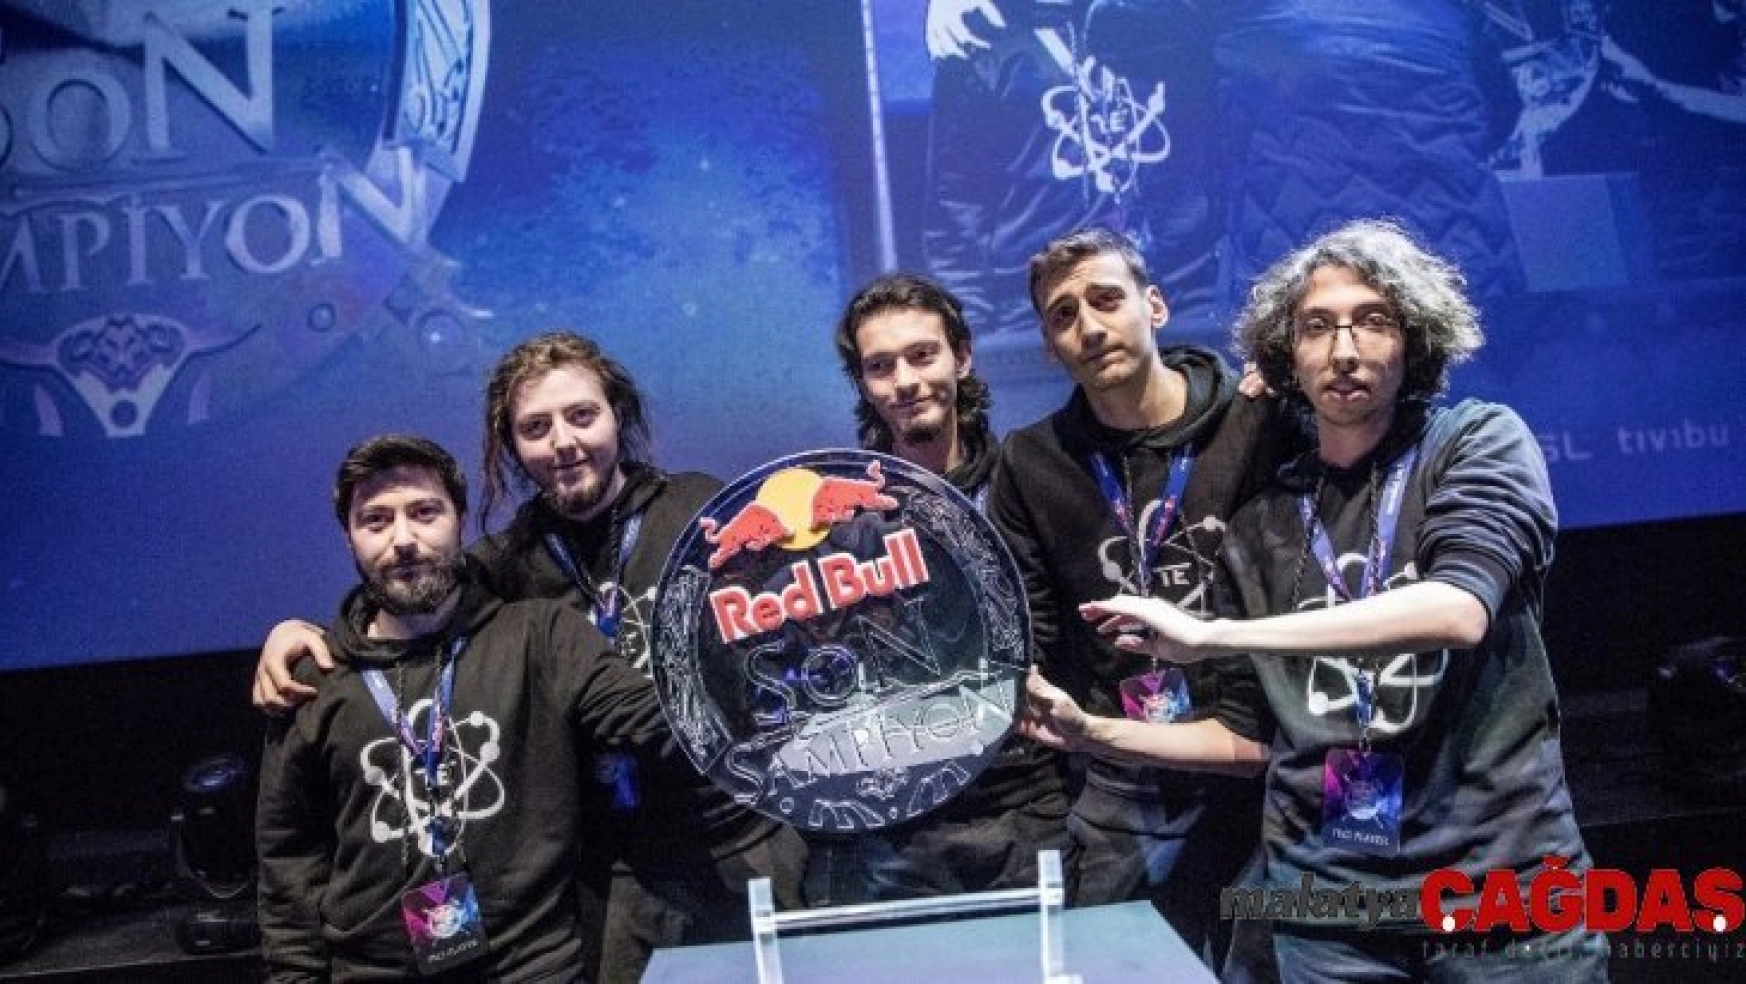 Red Bull Son Şampiyon kayıtları başladı